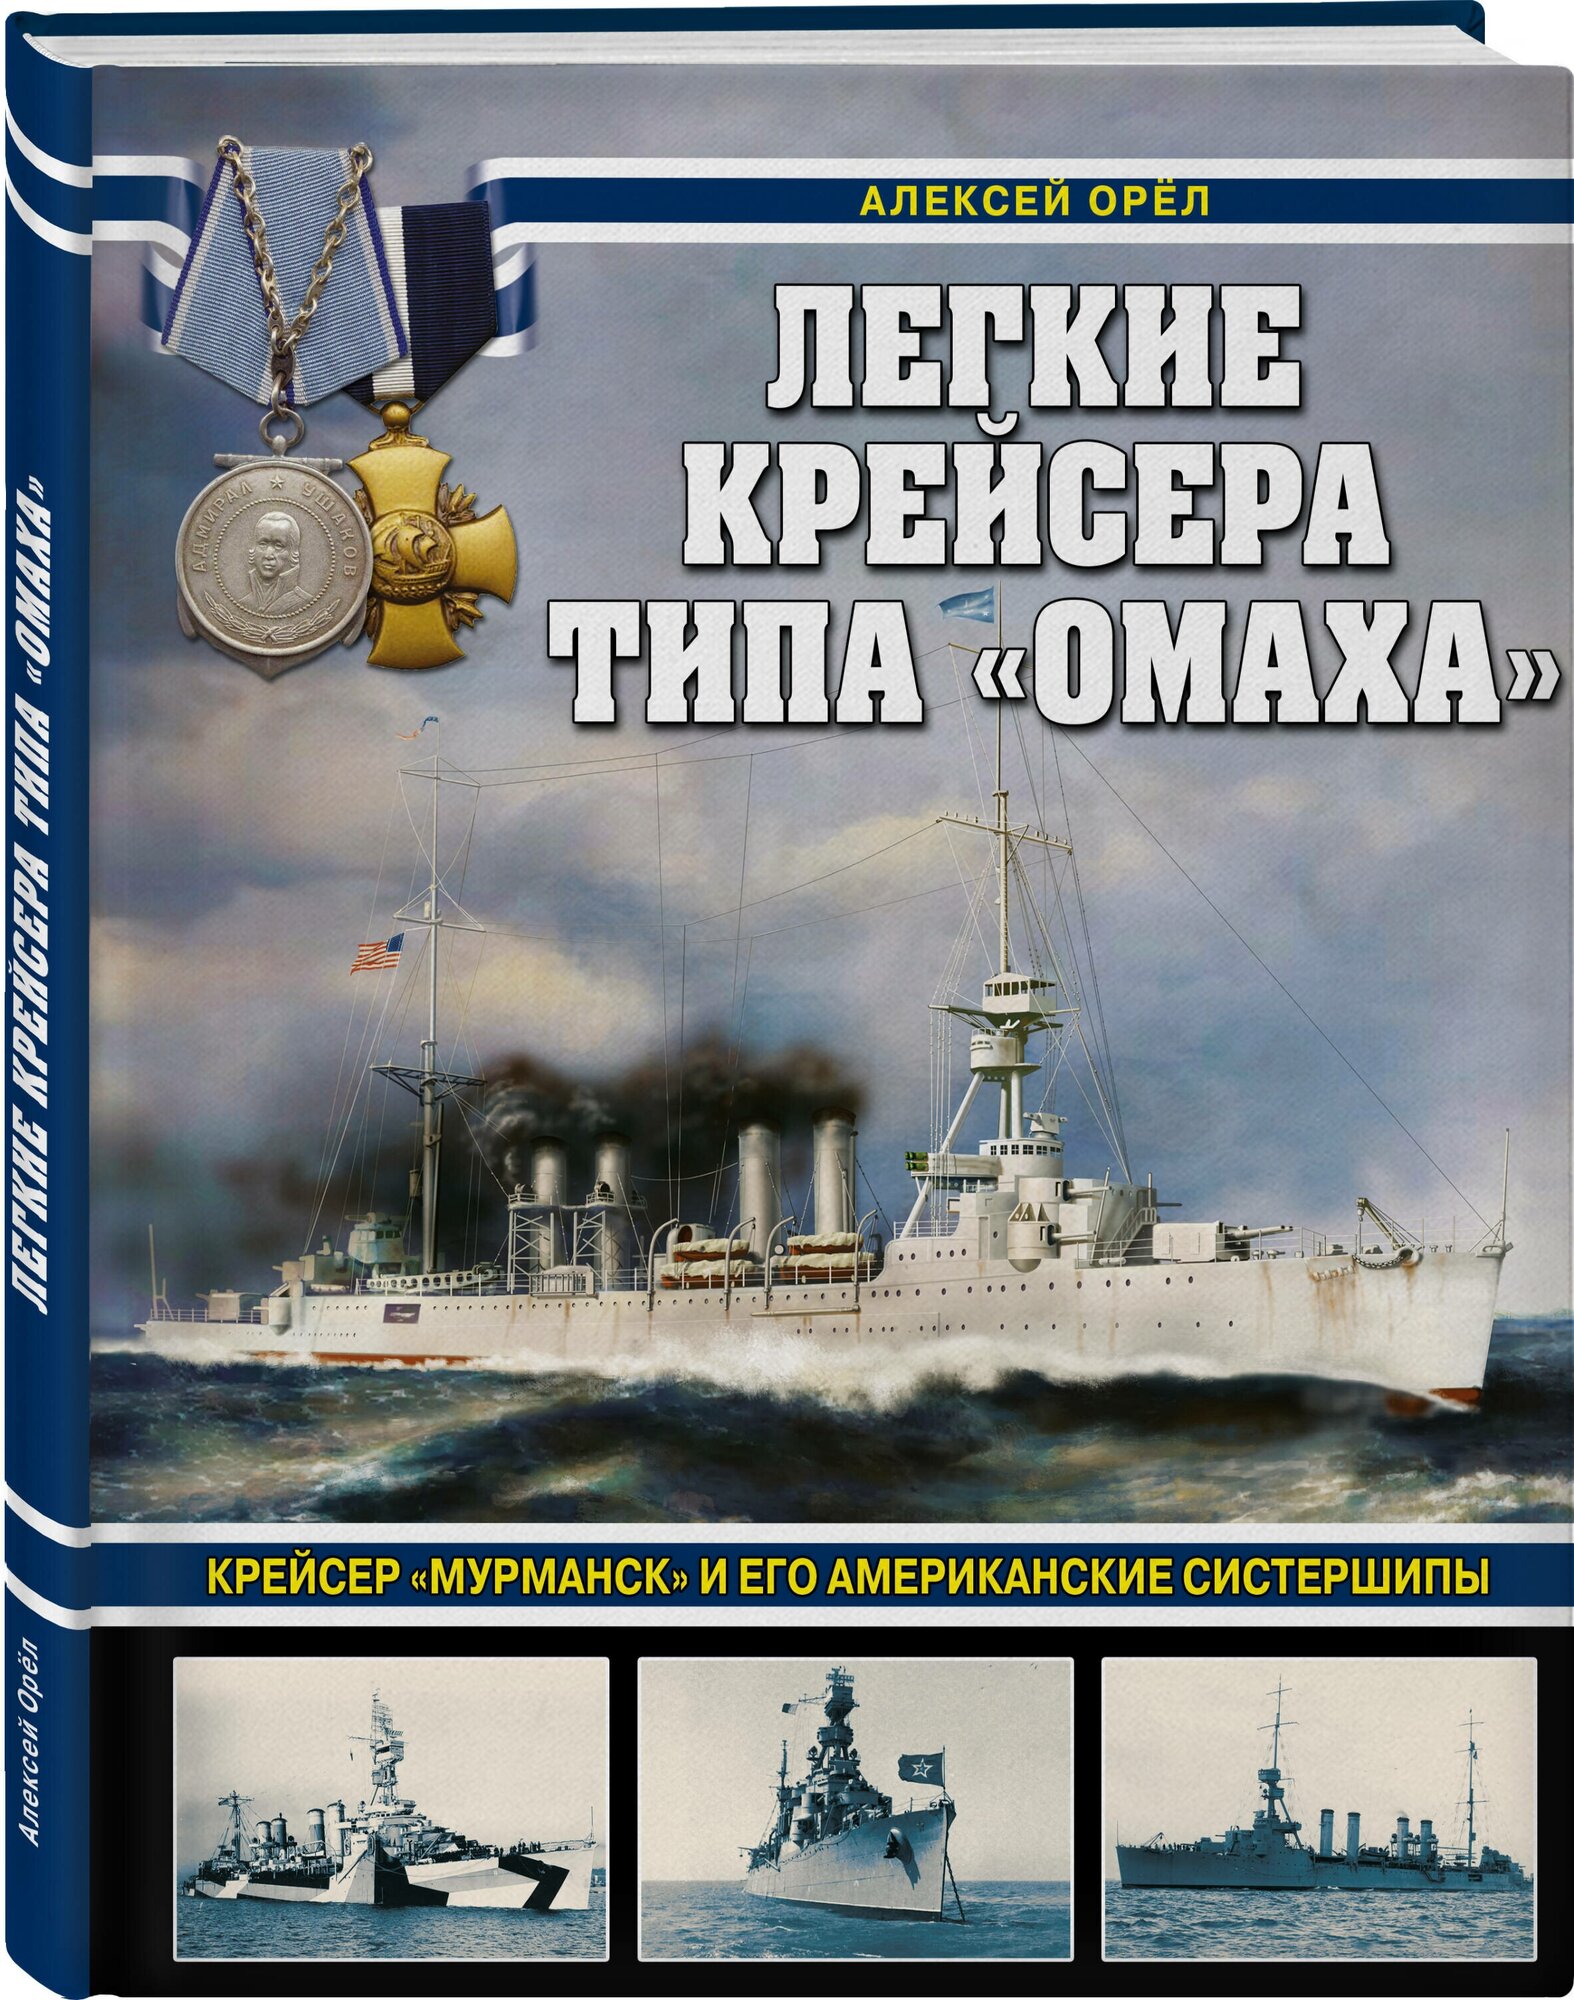 Легкие крейсера типа "Омаха". Крейсер "Мурманск" и его американские систершипы - фото №1